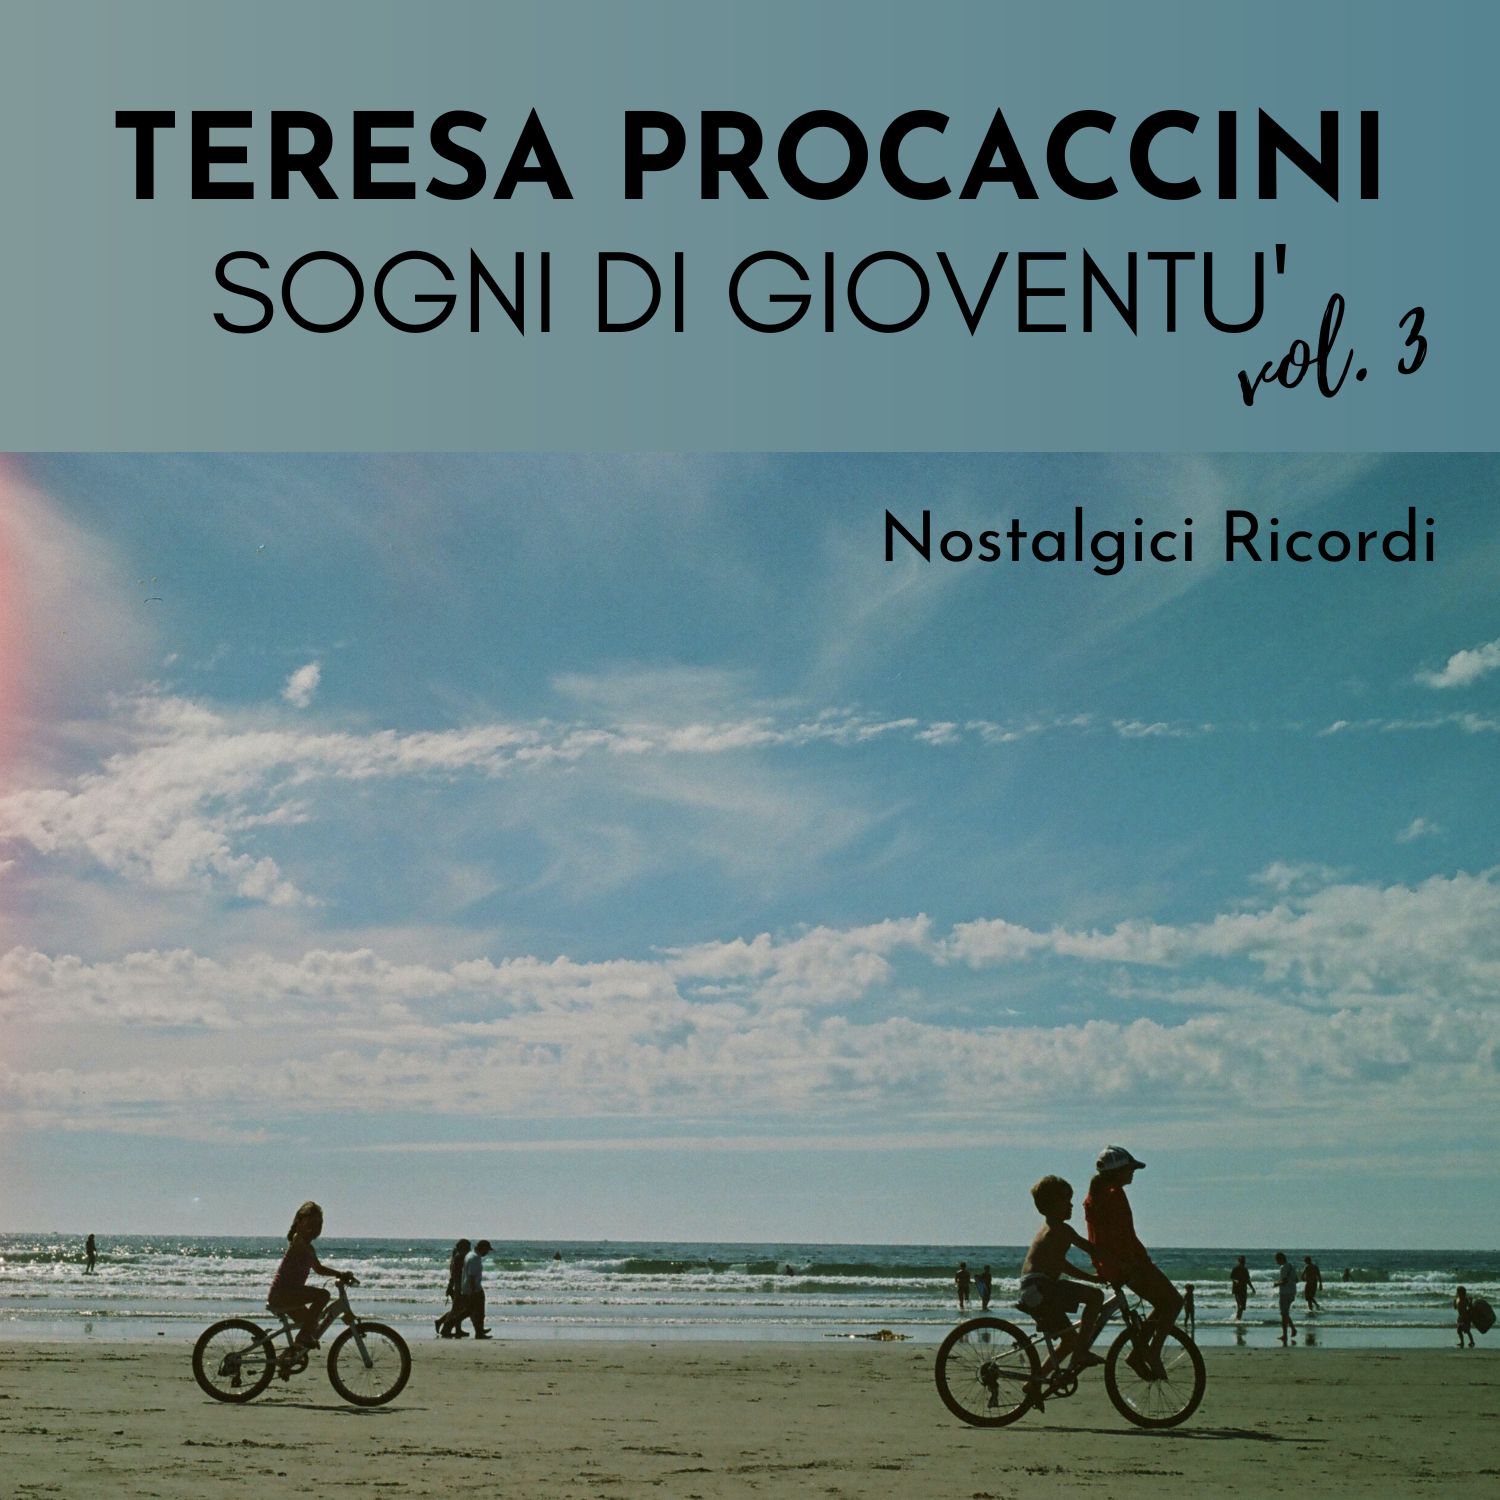 Teresa Procaccini: Sogni di gioventù, Vol. 3 (Nostalgici ricordi)